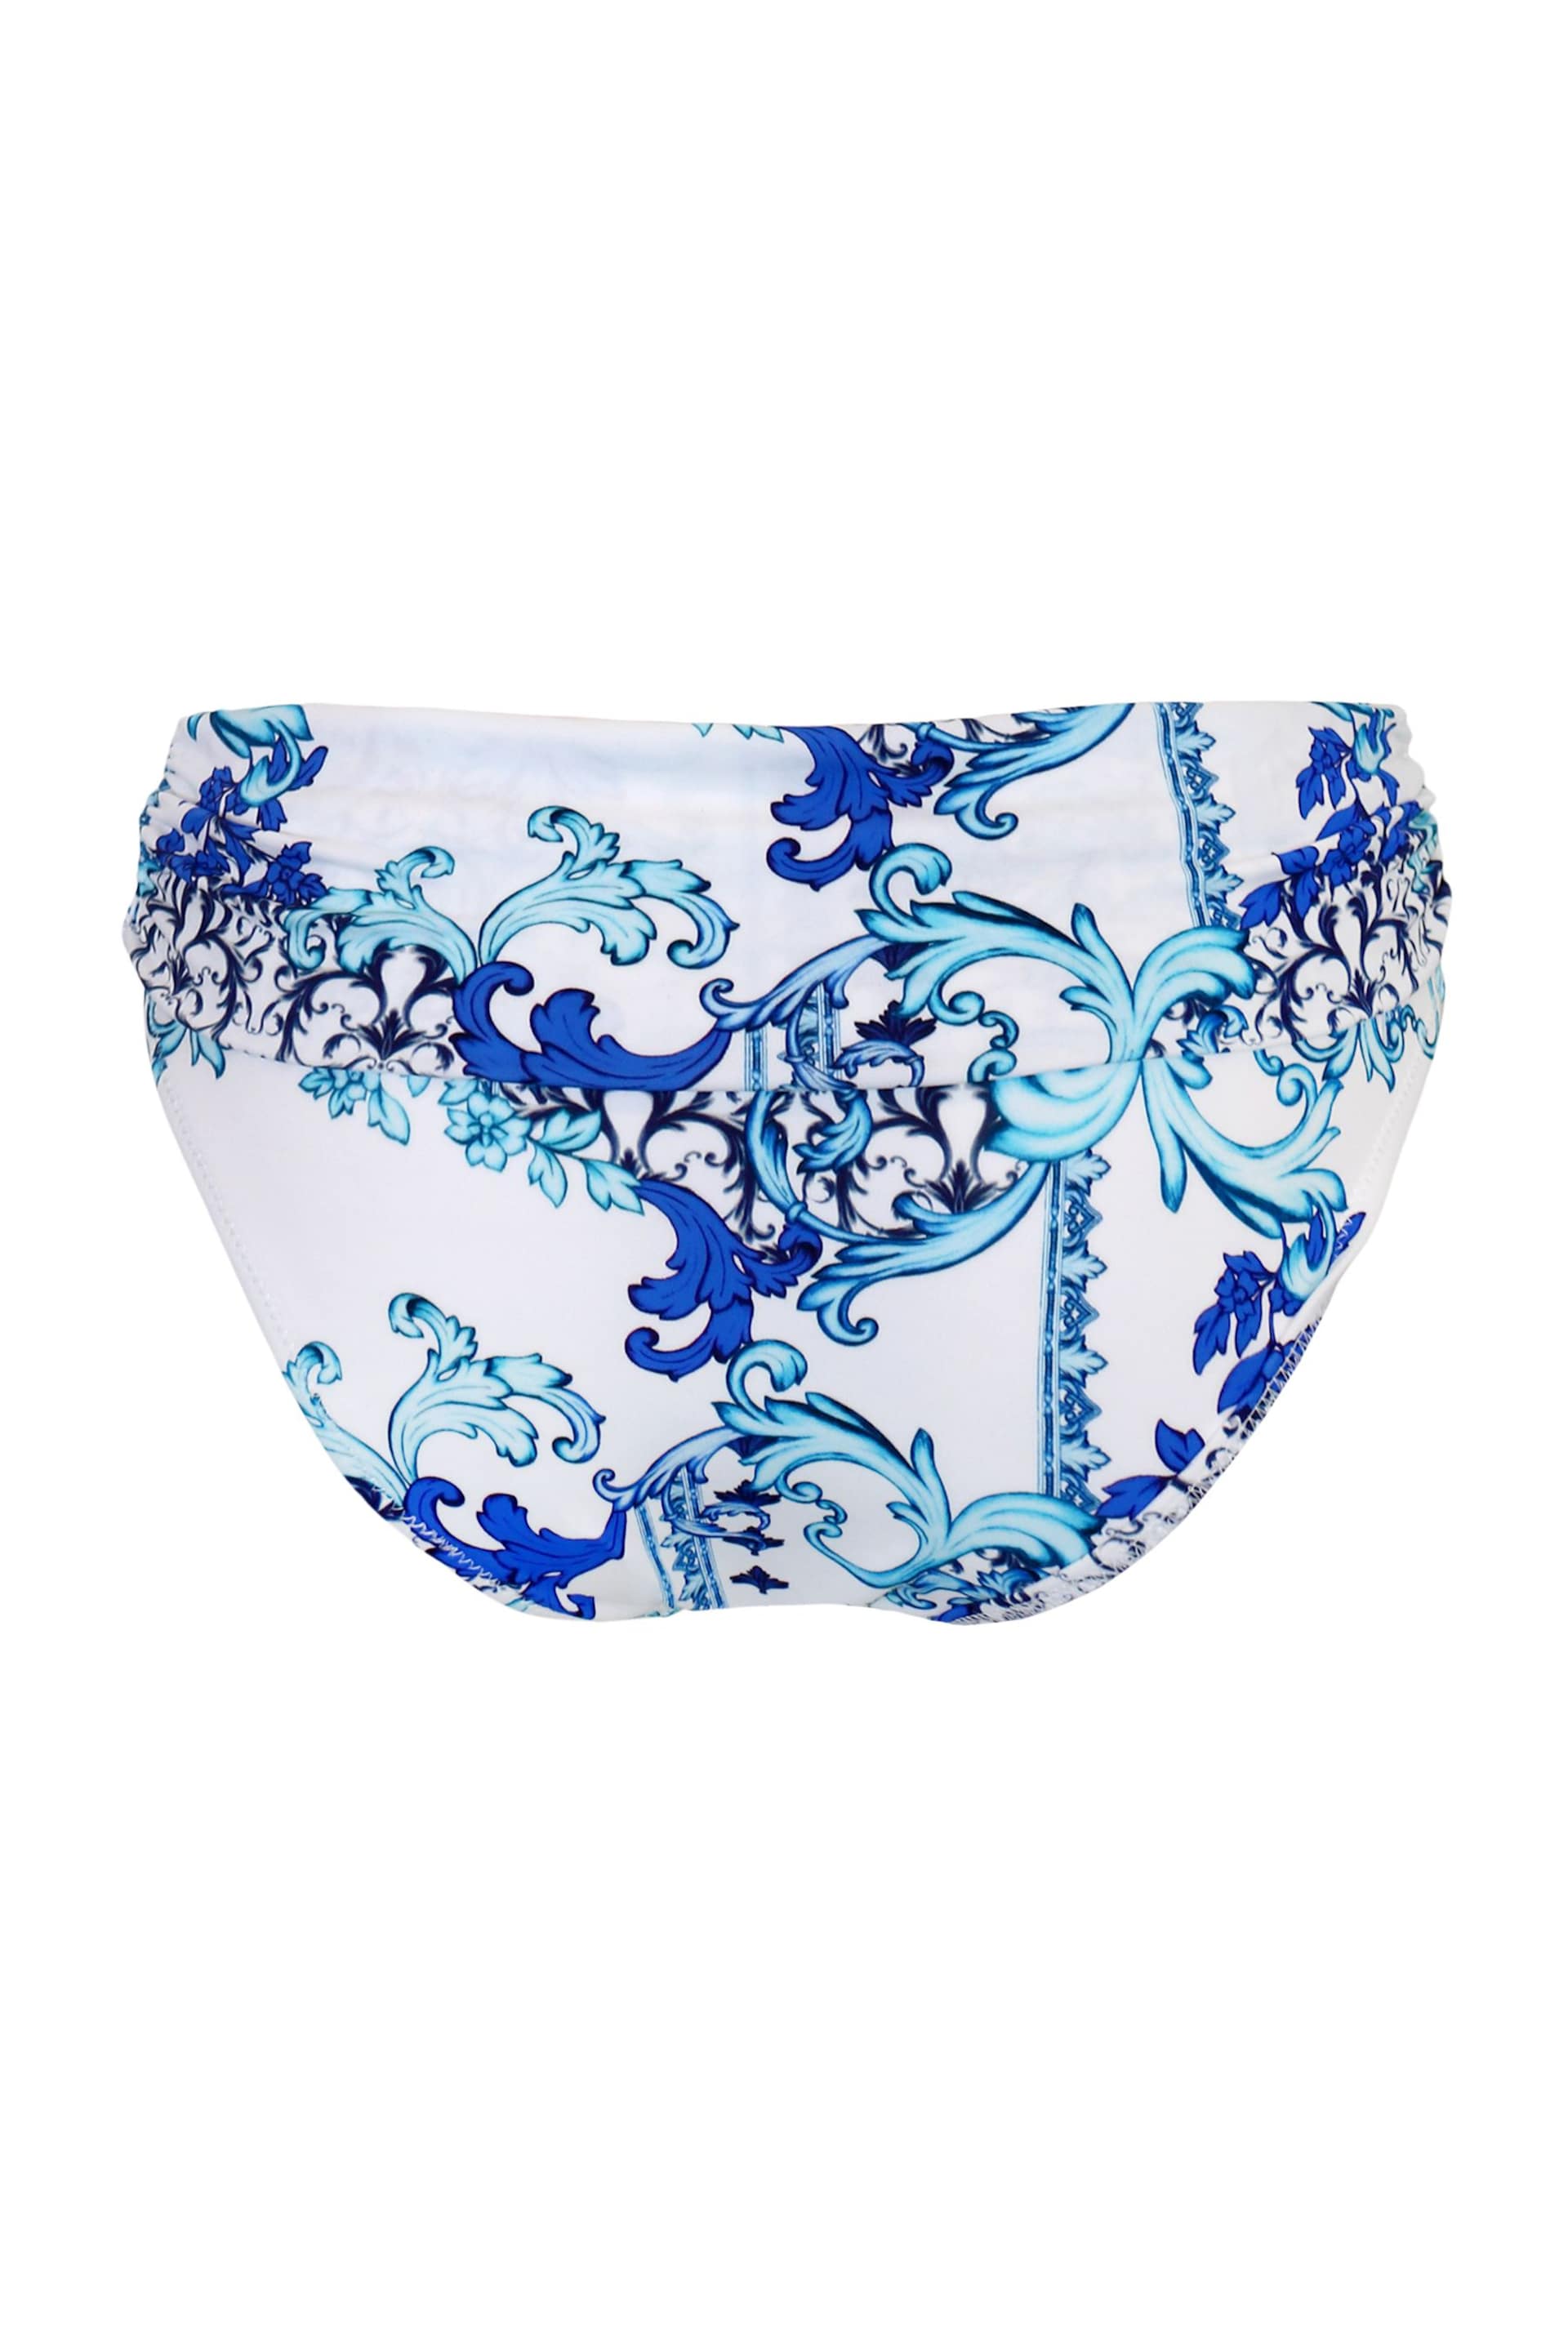 Pour Moi Blue Amalfi Foldover Bikini - Image 5 of 5